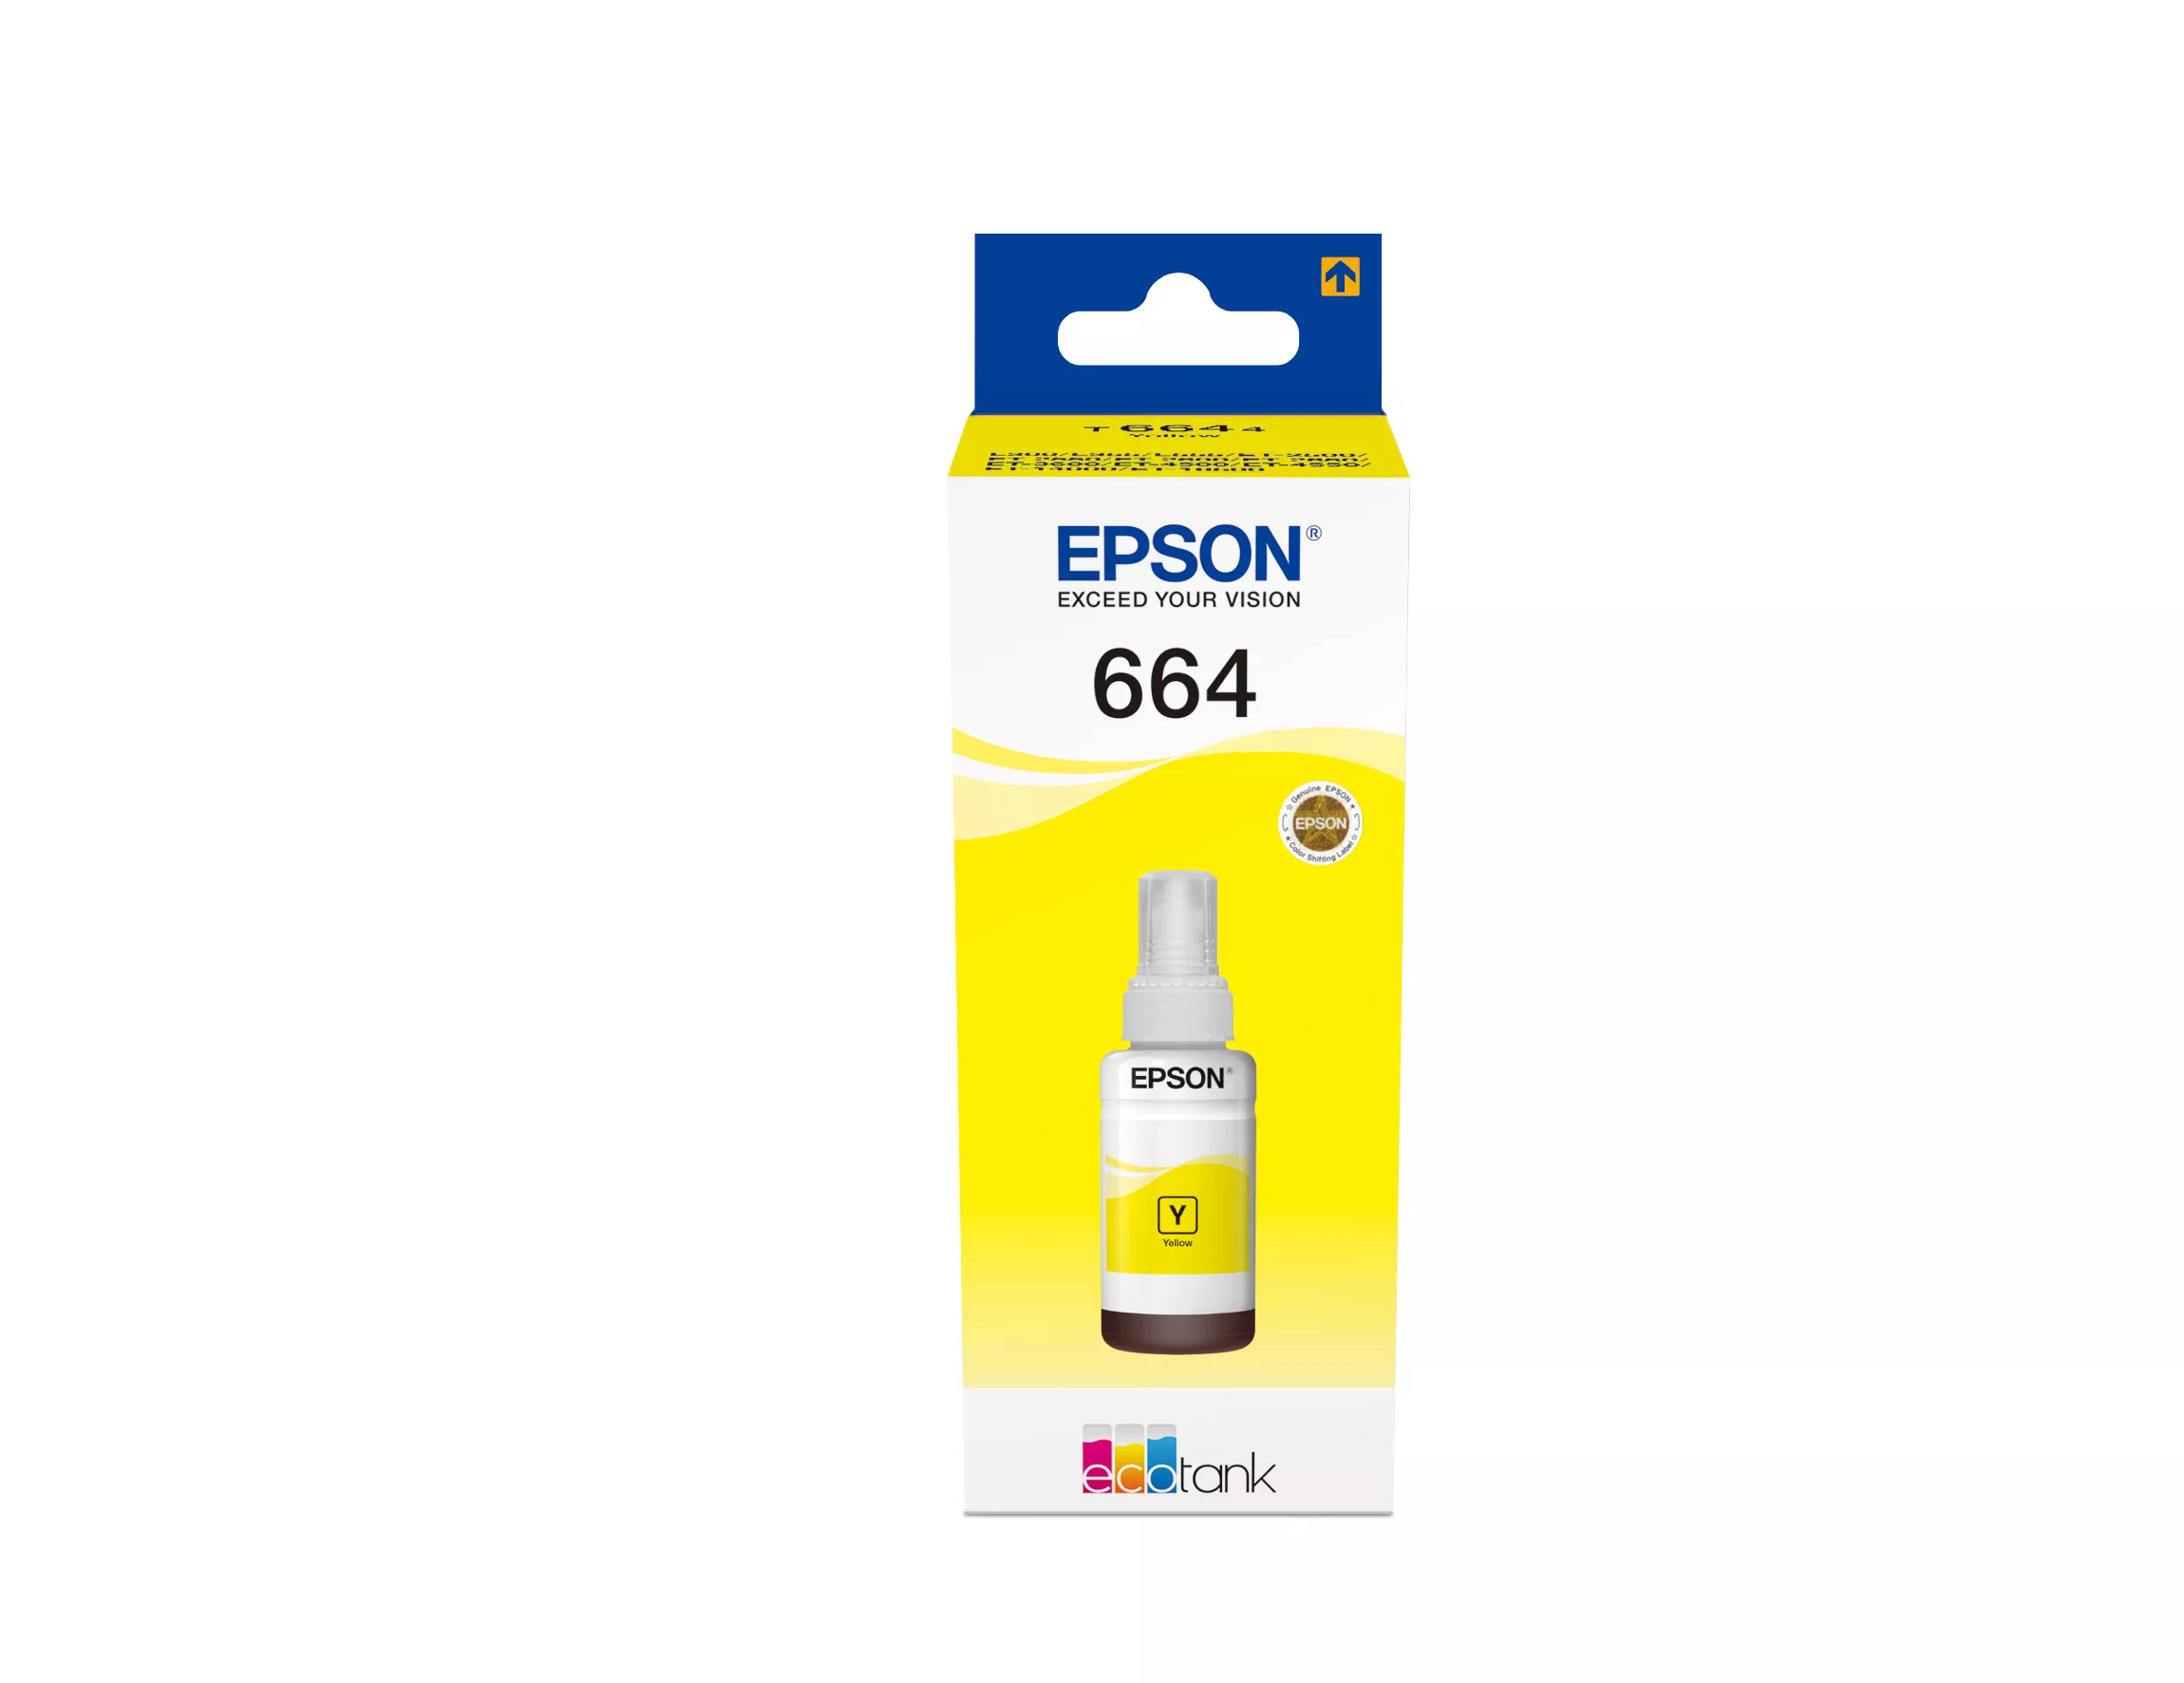 Achat EPSON T6644 cartouche d encre jaune 70ml pack de 1 au meilleur prix